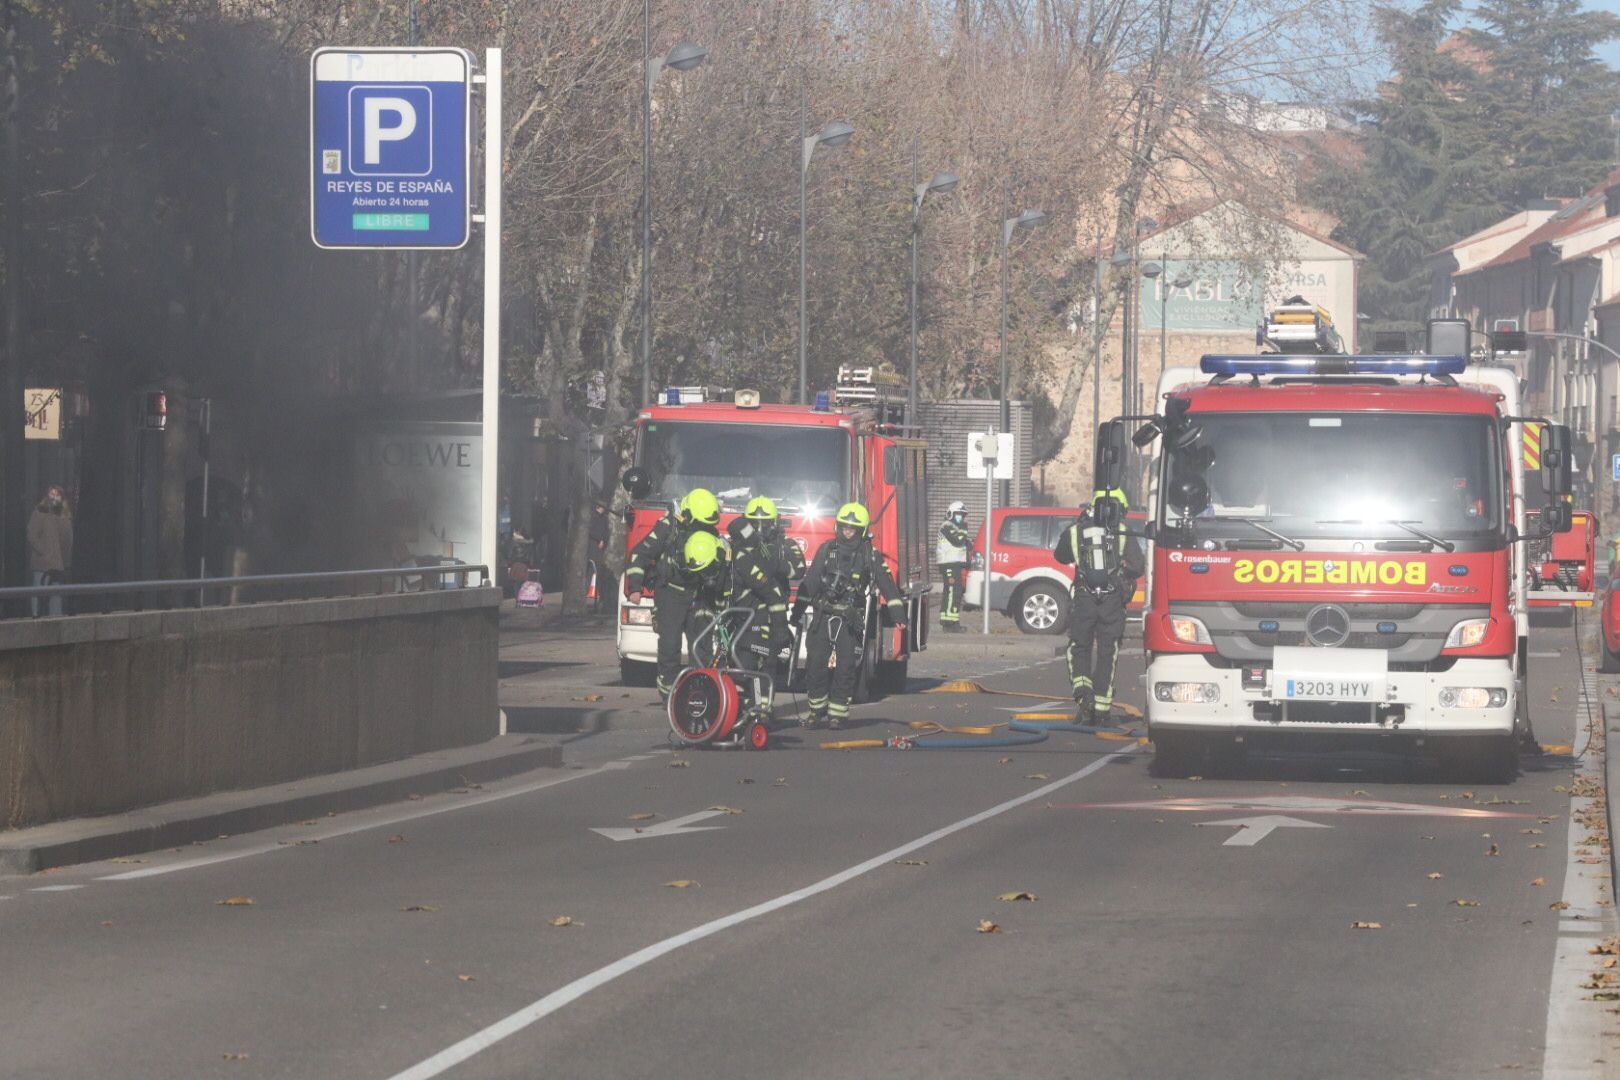 Un coche se incendia en el parking de Reyes de España. SALAMANCA24HORAS (17)